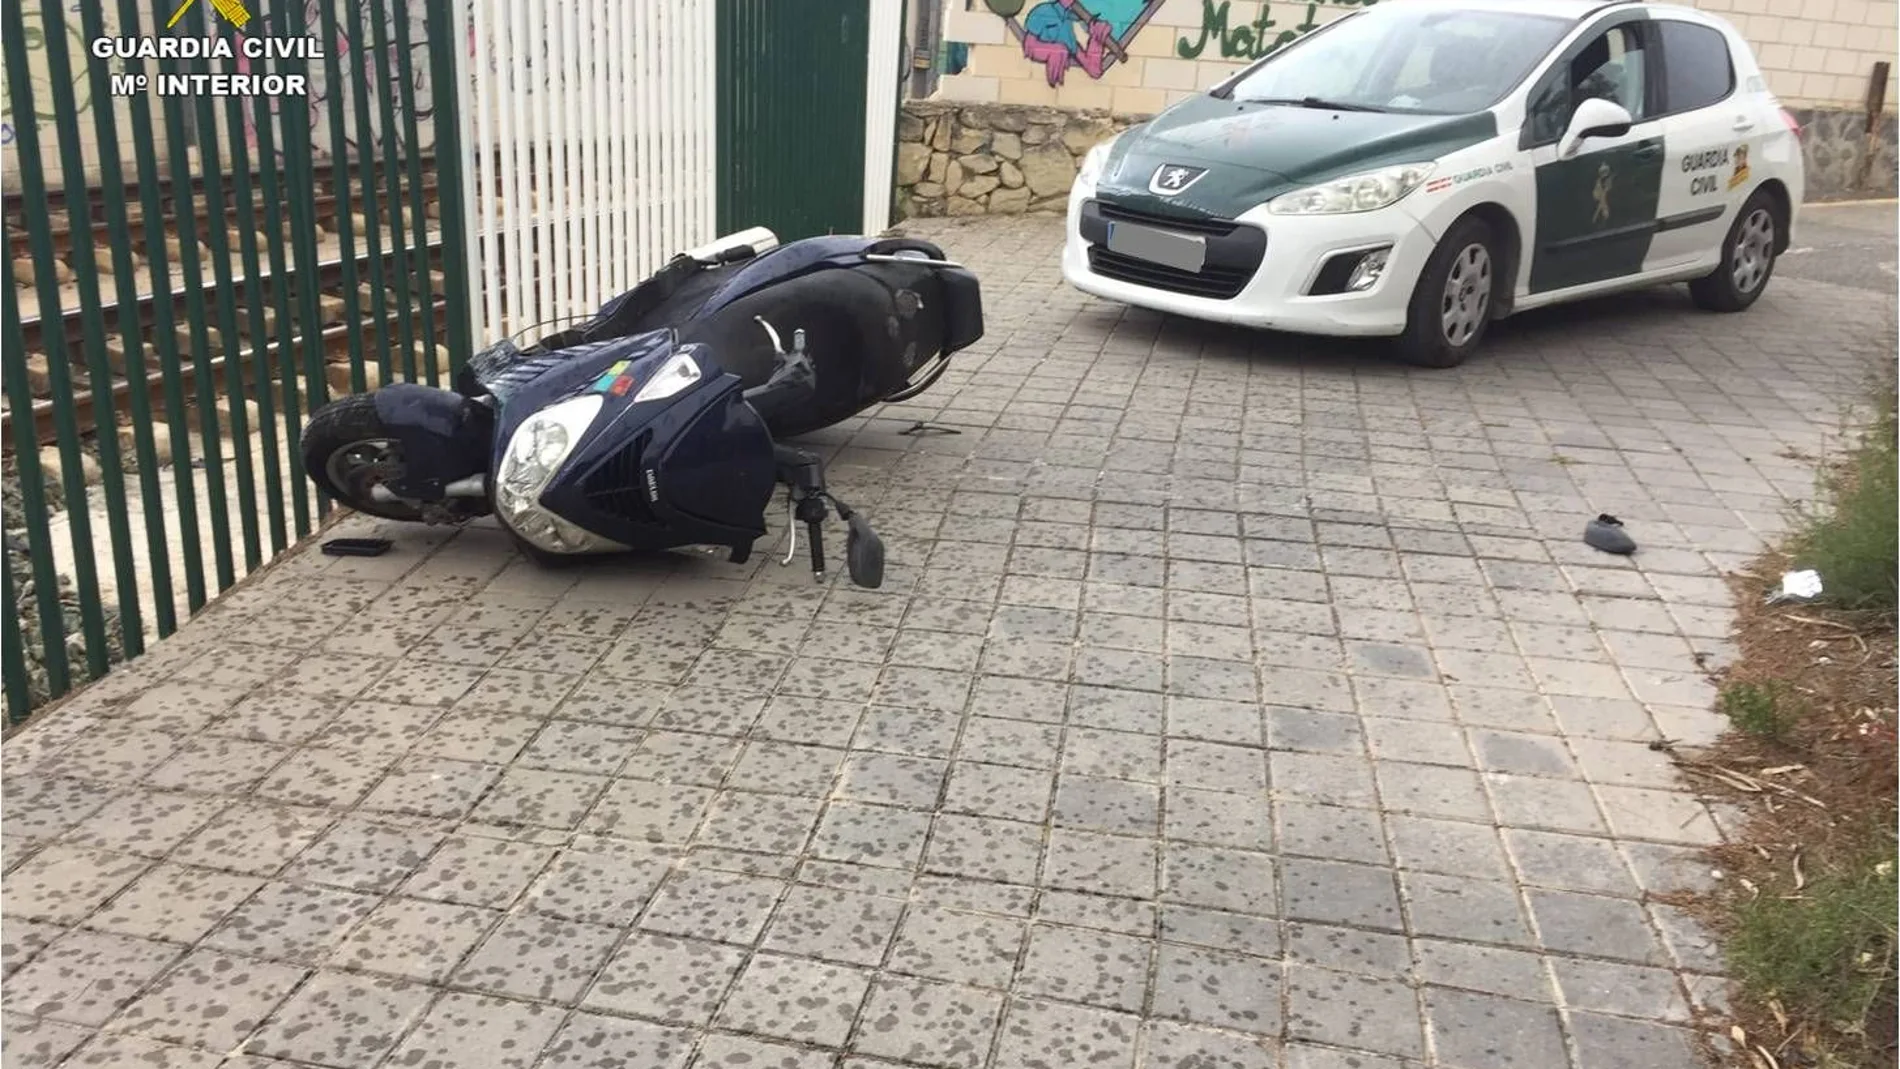 La motocicleta accidentada junto al apeadero del Tram de Salesianos